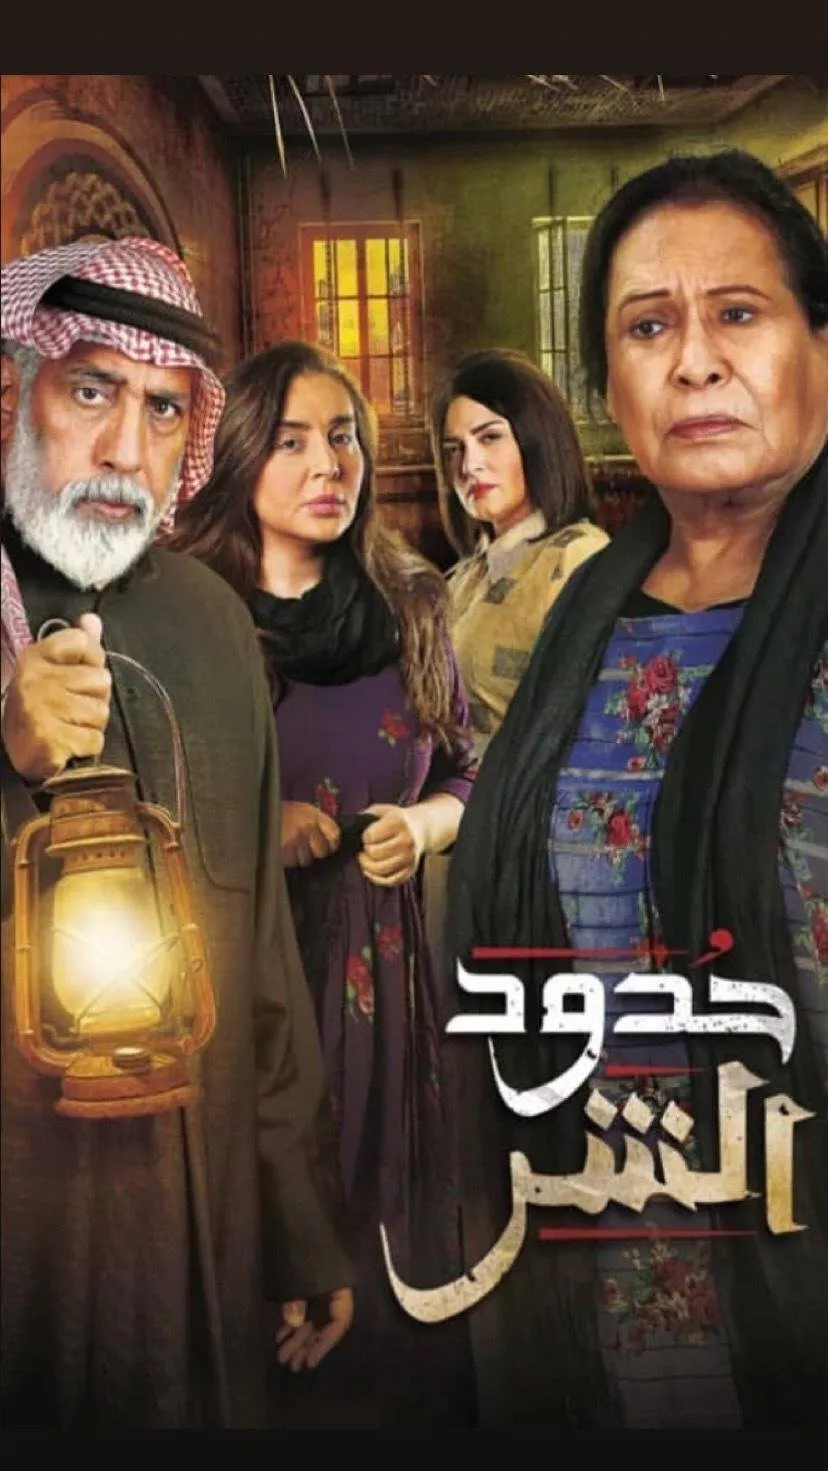 مواعيد المسلسلات الخليجية لرمضان 2019: استمتعي بمشاهدتها